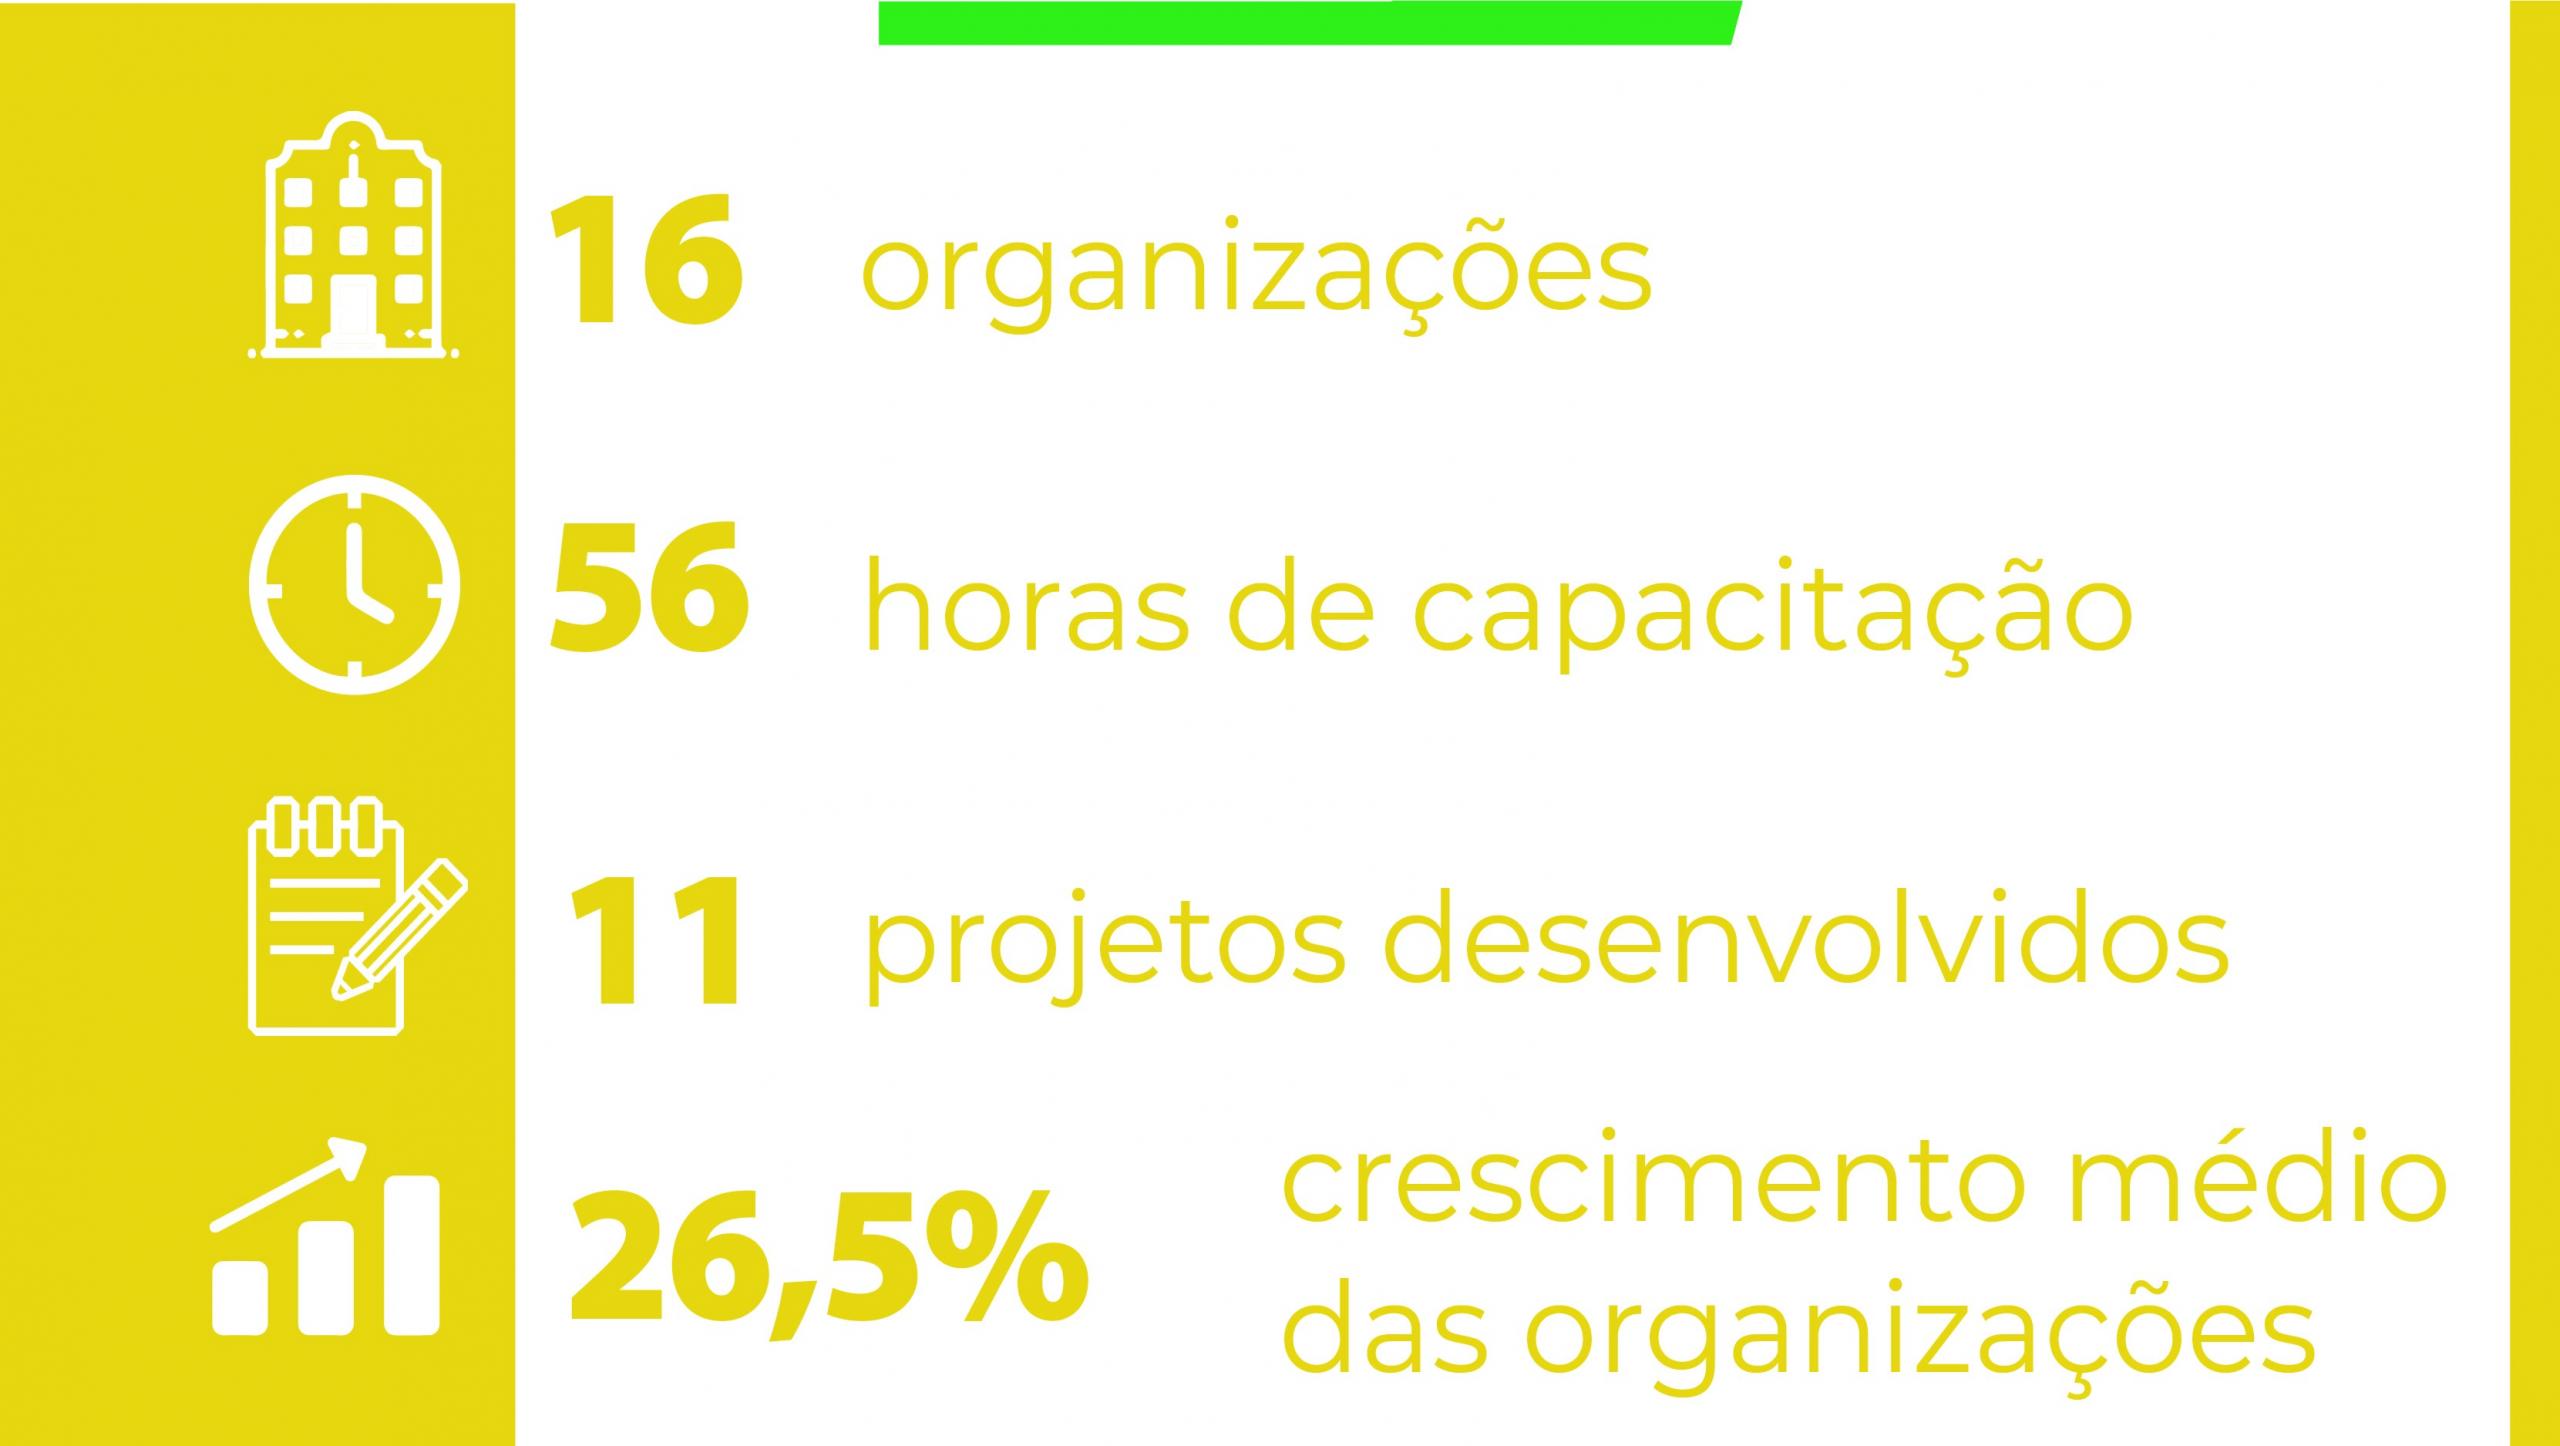 AcelerAÇÃO: 16 organizações participantes, 56 horas de formação, 11 projetos desenvolvidos e 26,5% de crescimento médio das organizações